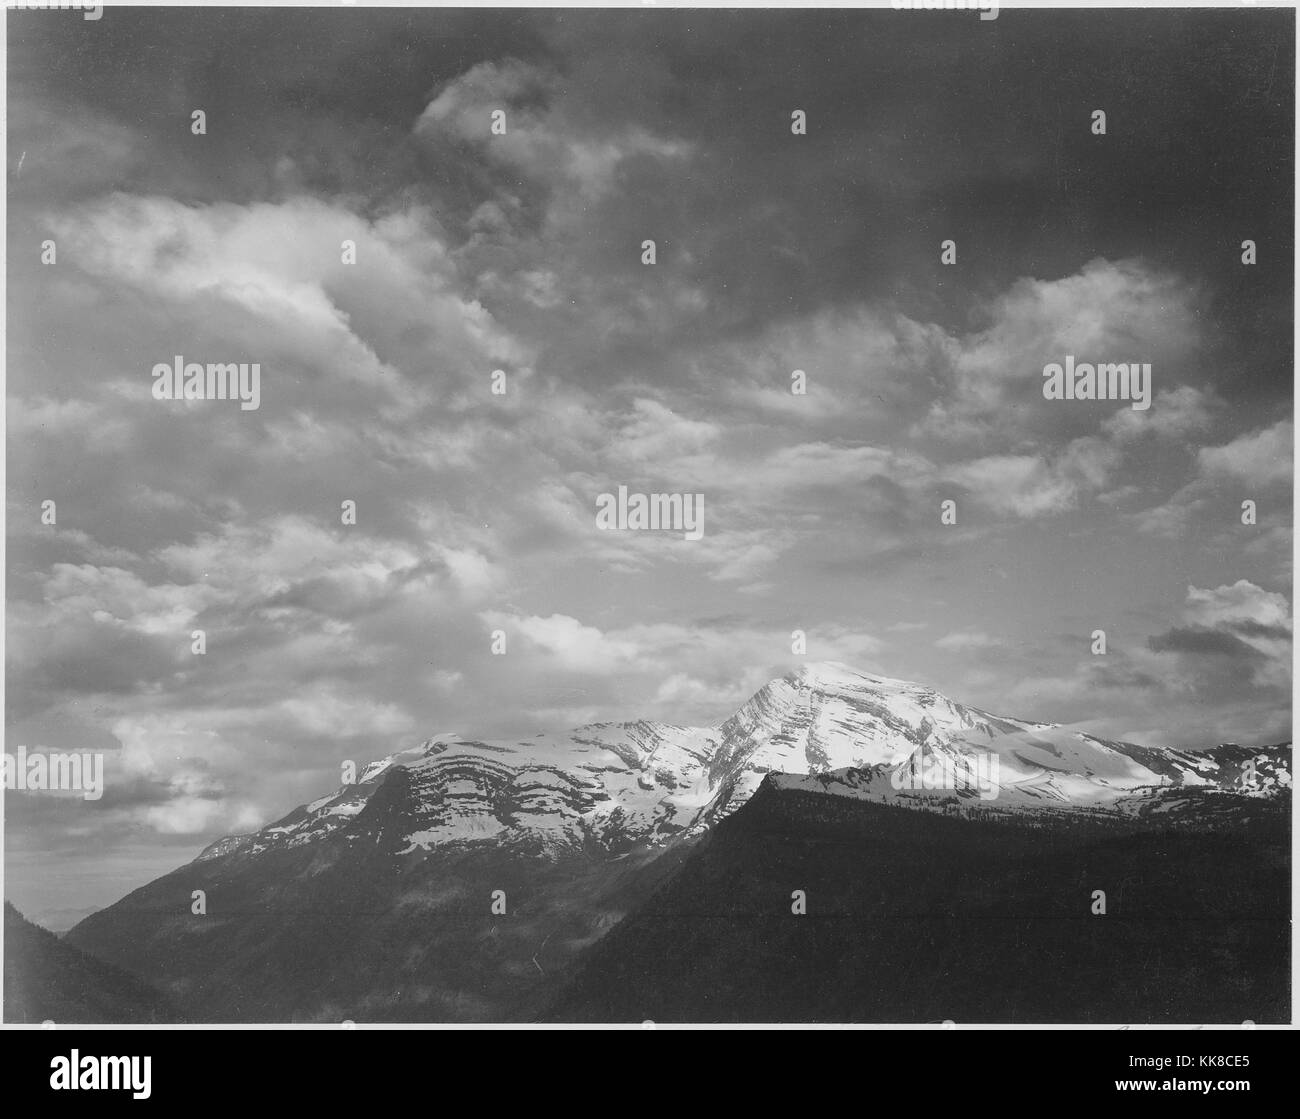 Photographie en noir et blanc, sombre et les nuages d'avant-plan, les montagnes en surbrillance, titré "Heaven's Peak', par Ansel Adams, à partir de photographies des Parcs Nationaux et Monuments, Glacier National Park, Montana, United States, 1941. Banque D'Images